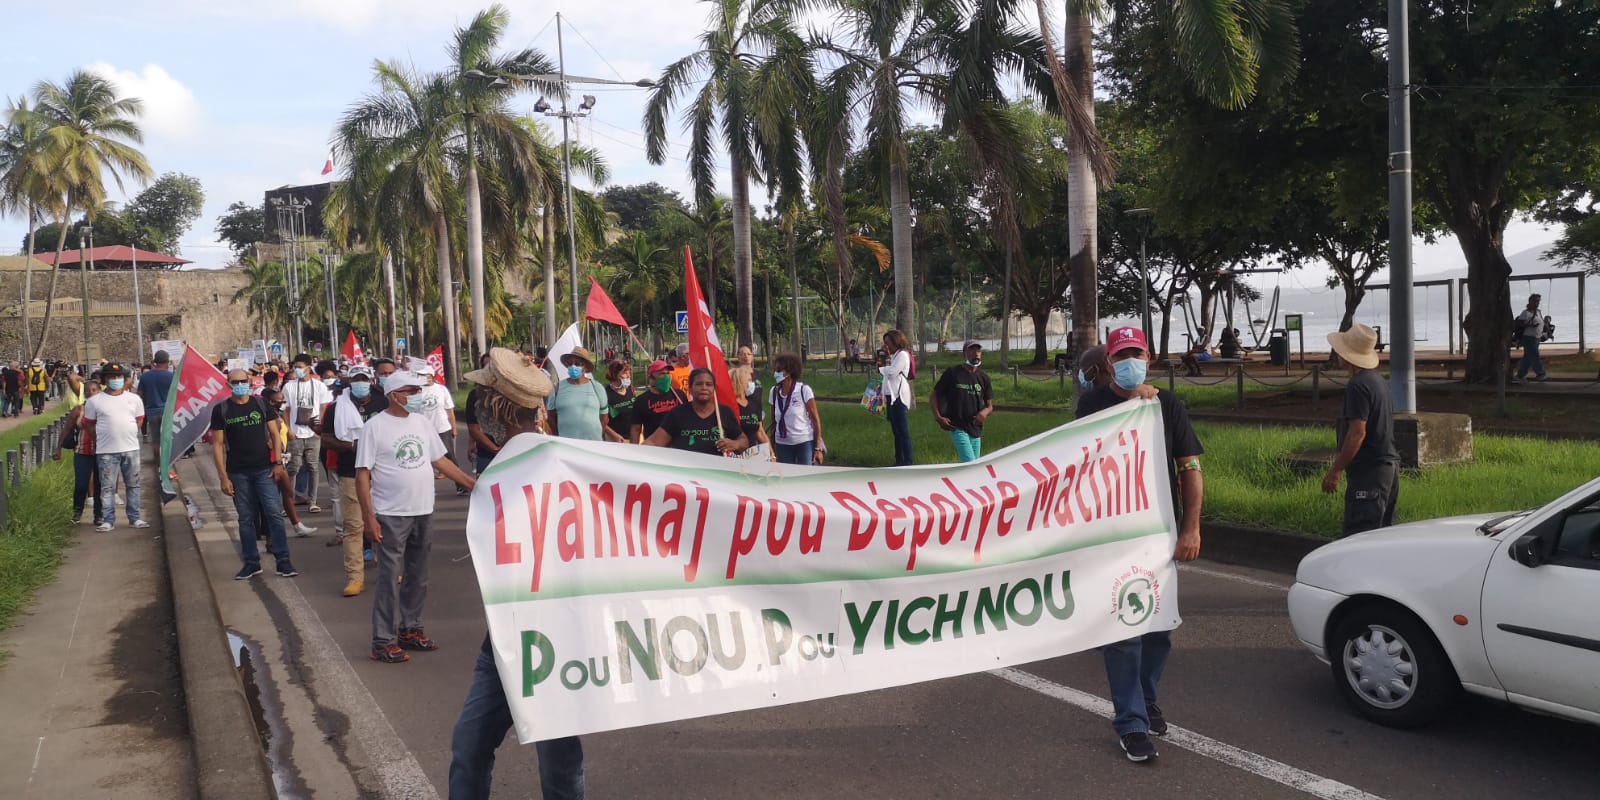     Les militants anti-chlordécone manifestent , malgré le confinement 

